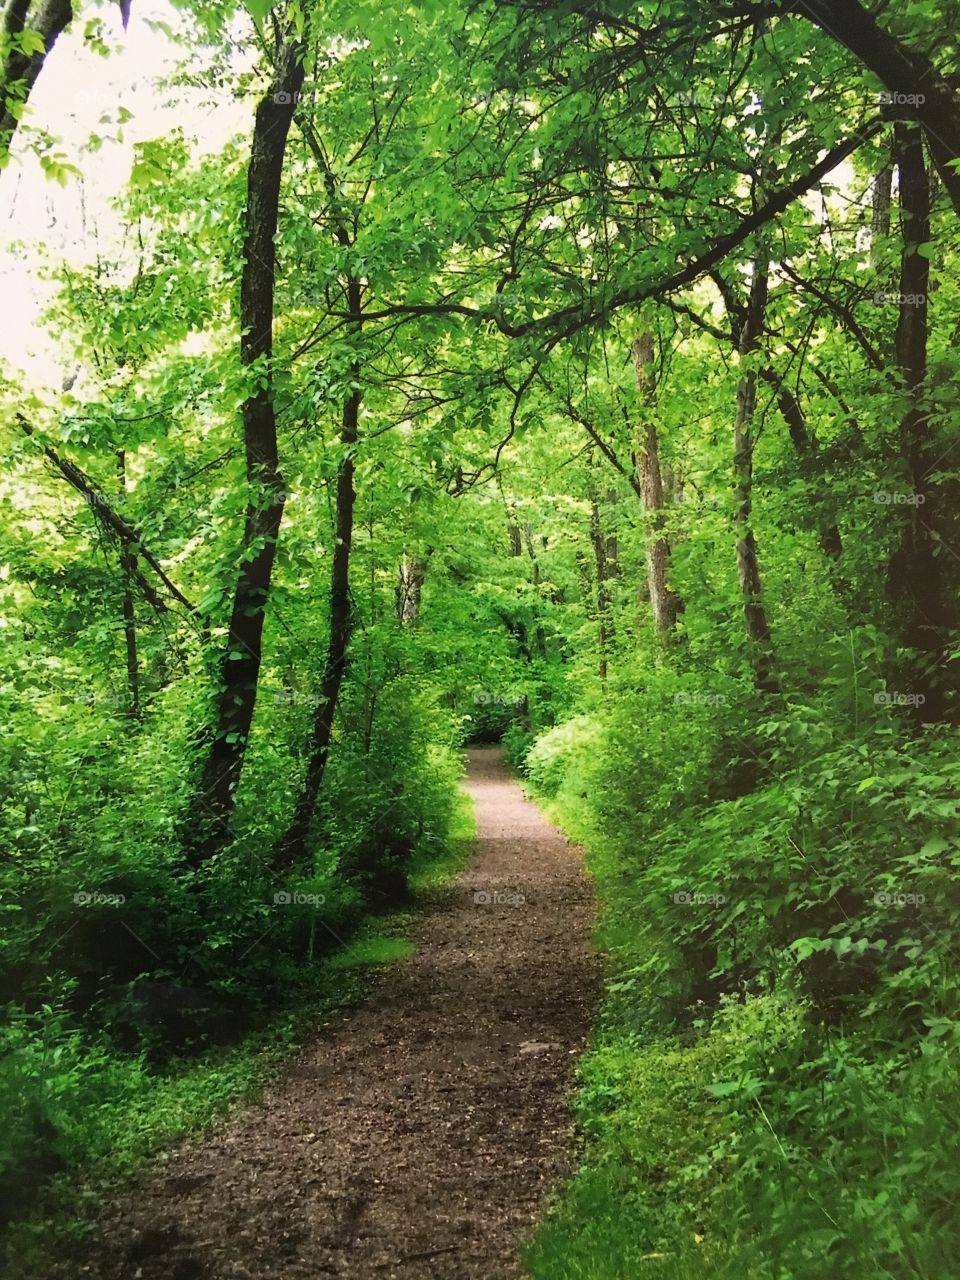 Lush green path